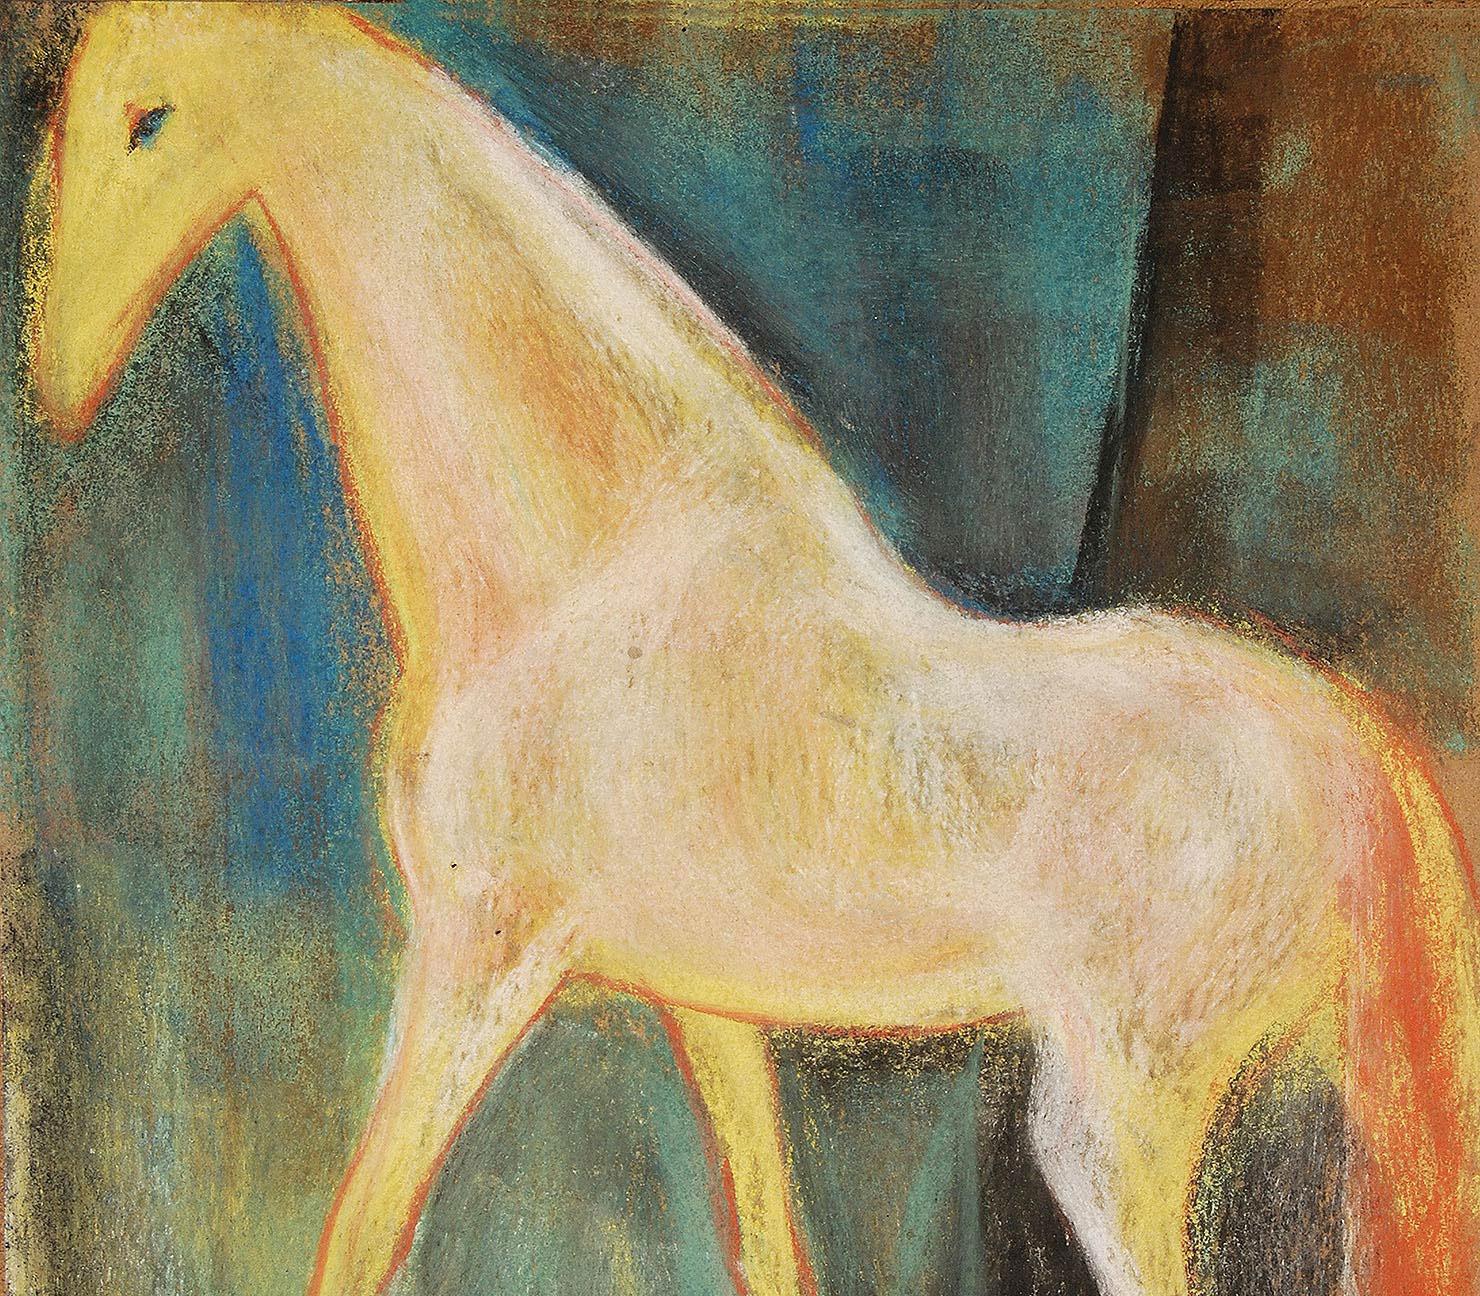 Sunil Das - Pferd - 11 x 9 Zoll (ungerahmtes Format)
Pastell auf Sandpapier
Inklusive Versand in hängefertiger Form.

Sunil Das war einer der wichtigsten postmodernen Maler Indiens und wurde durch seine Pferdezeichnungen bekannt. Er hat ihr